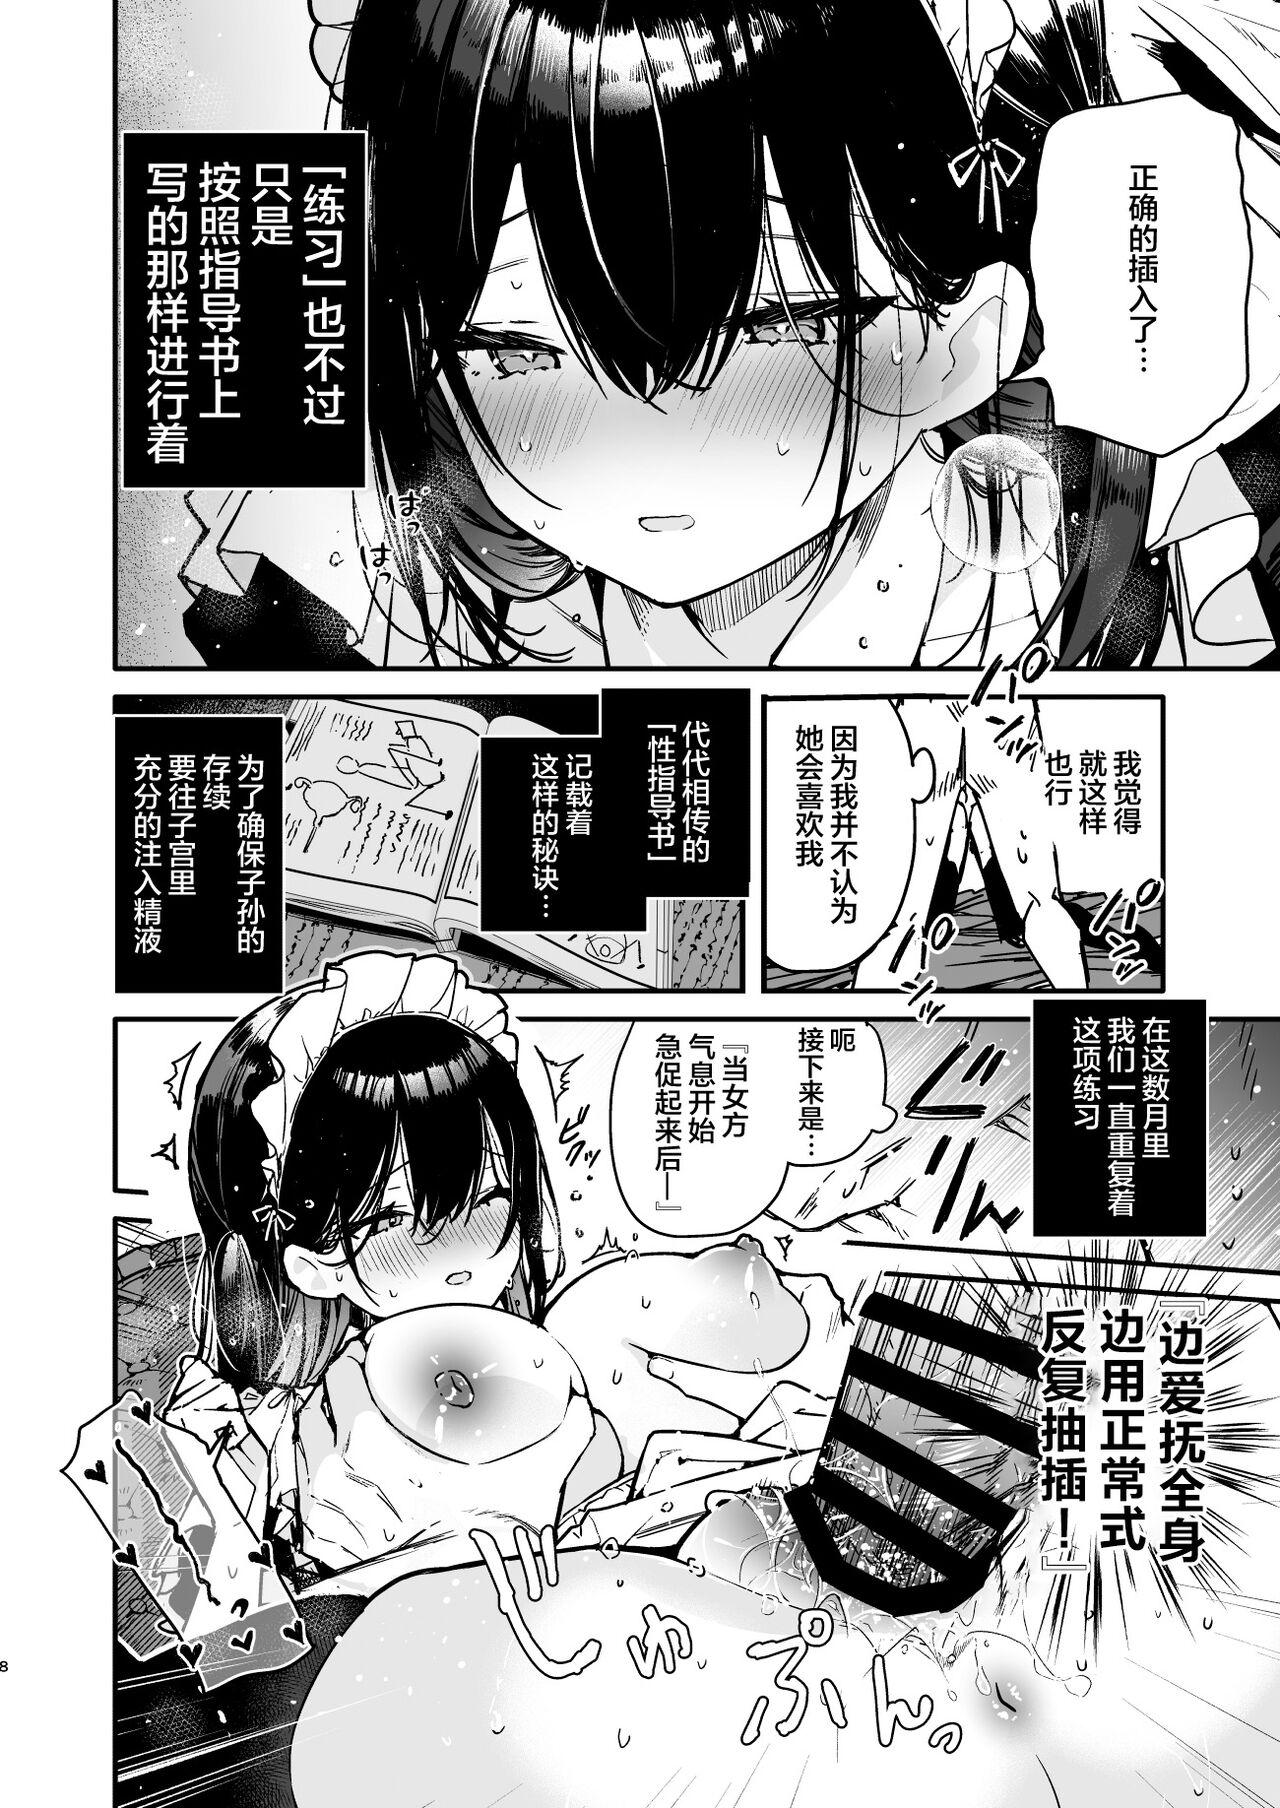 Whooty Maid-san no Naka ga Ippai ni Naru made Renzoku Shasei Ecchi - Original Public Nudity - Page 7